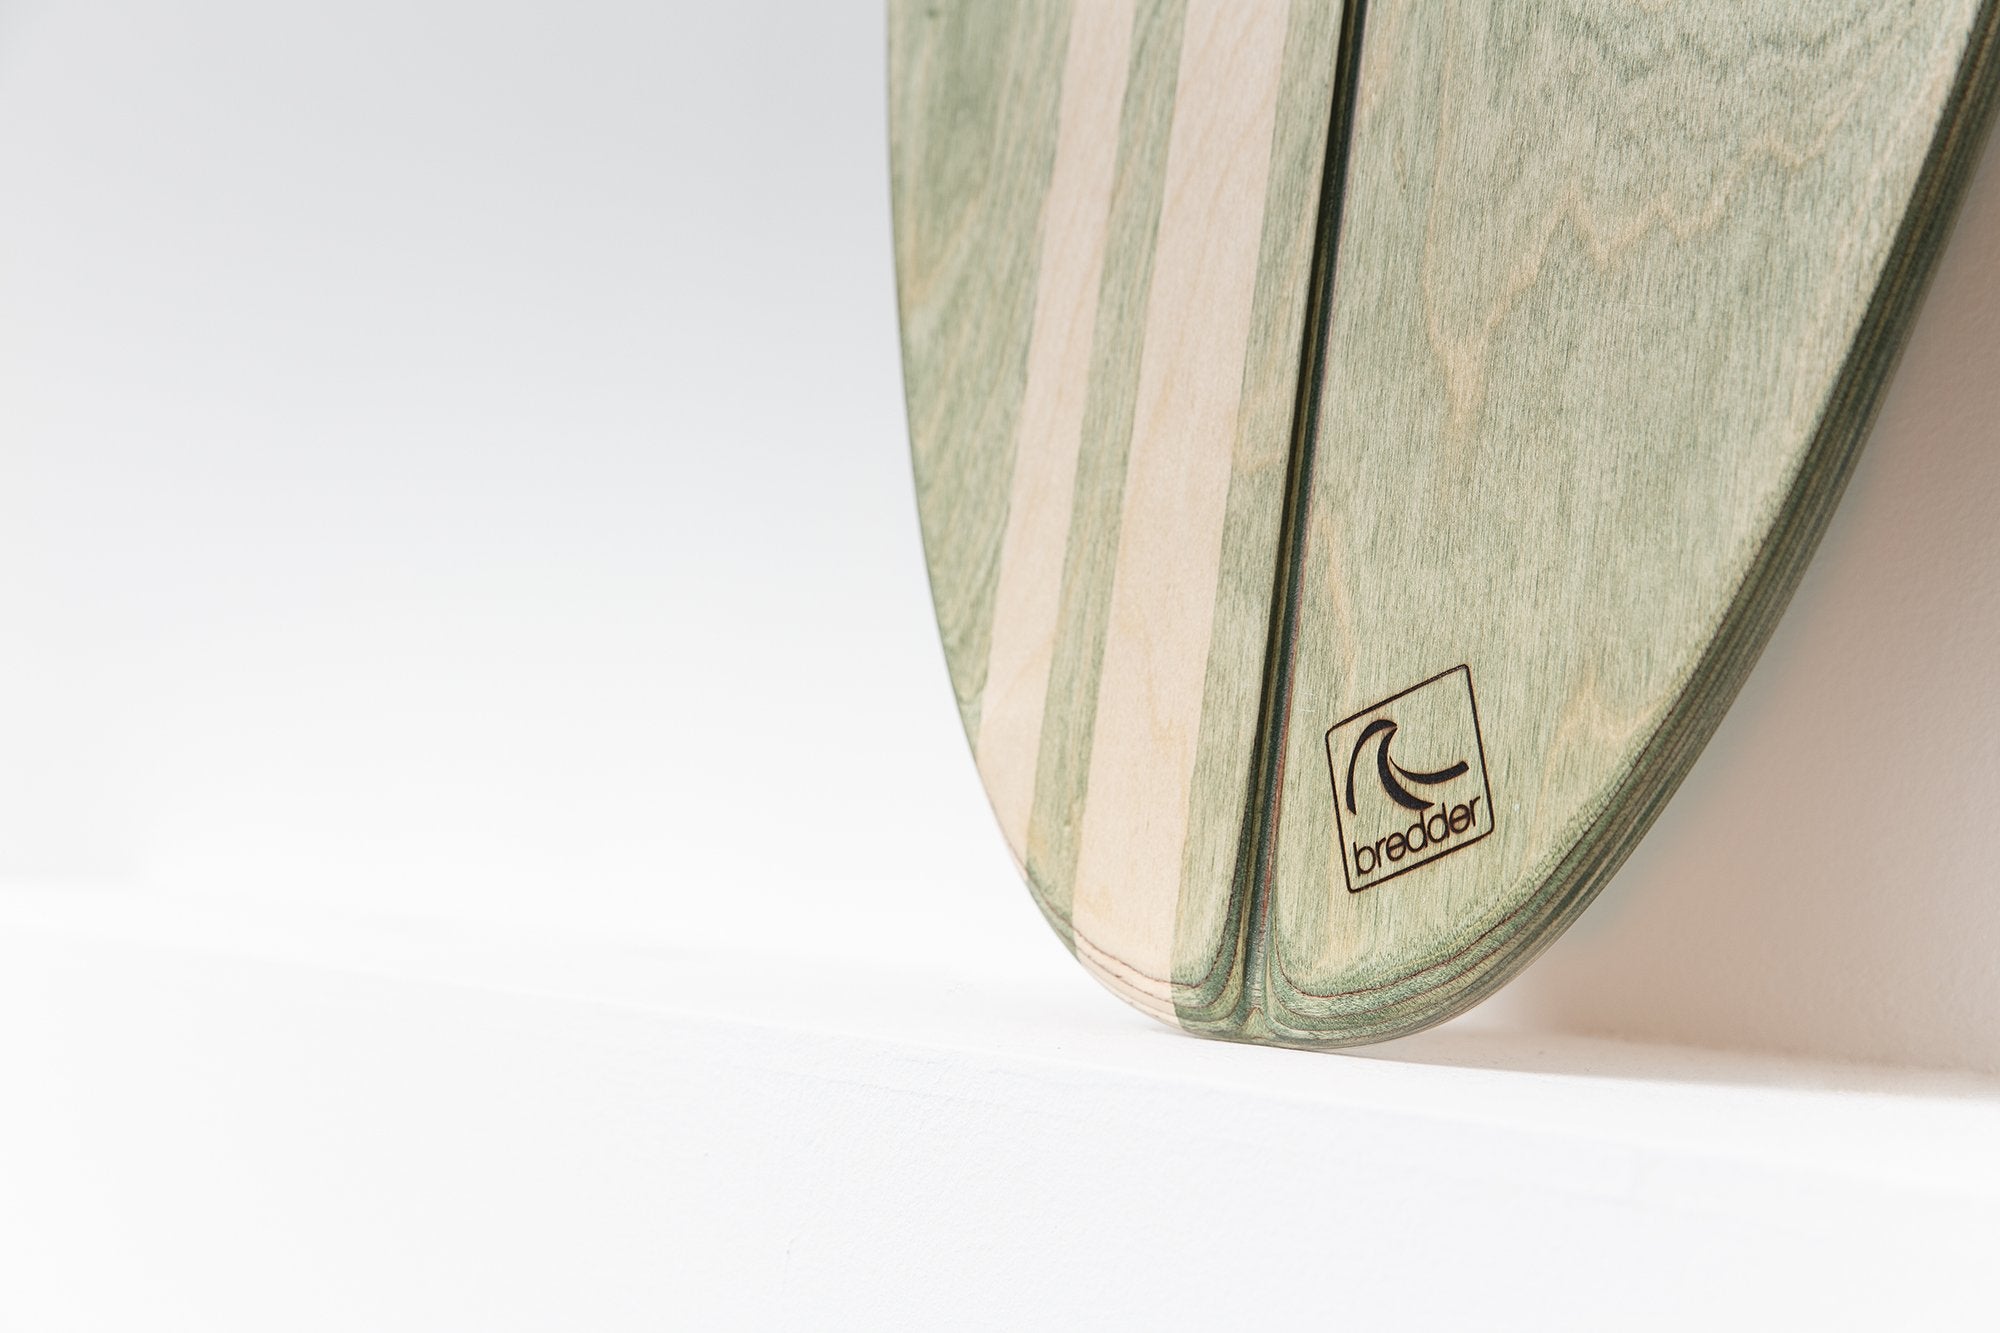 Balance Board Mundaka Shorty Surfboard Detail